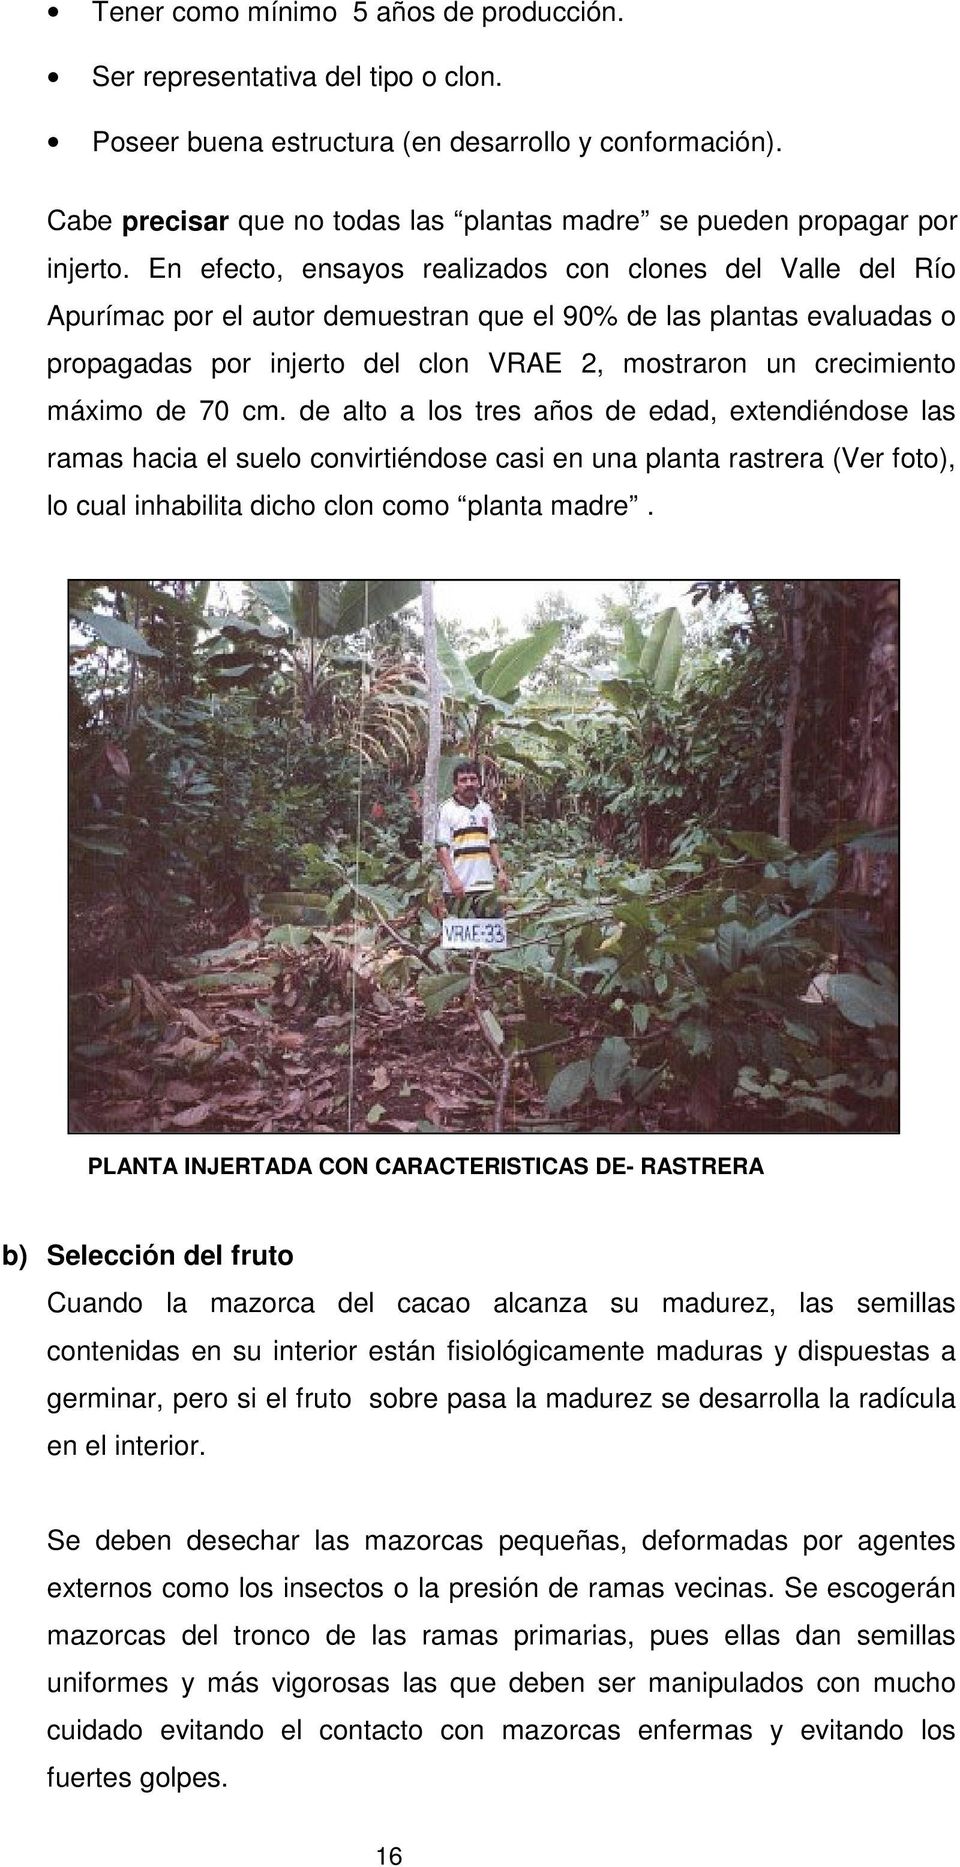 En efecto, ensayos realizados con clones del Valle del Río Apurímac por el autor demuestran que el 90% de las plantas evaluadas o propagadas por injerto del clon VRAE 2, mostraron un crecimiento